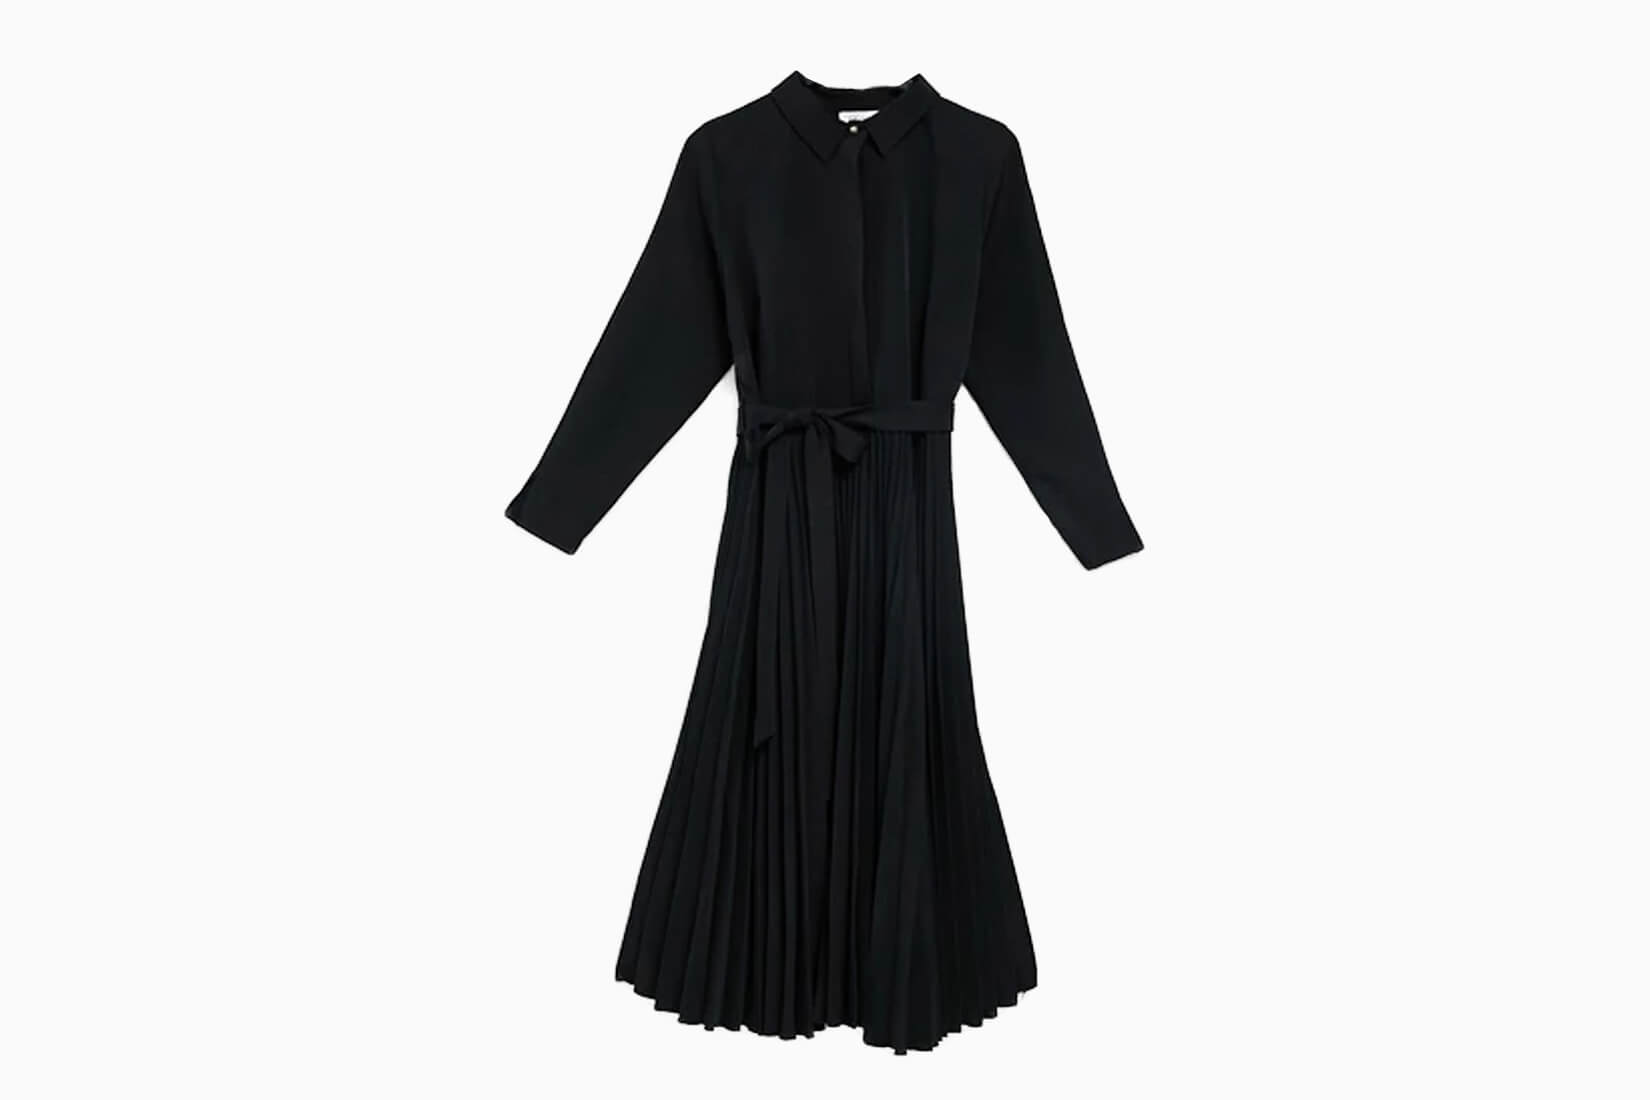 Les meilleures petites robes noires de la garde-robe londonienne - Luxe Digital